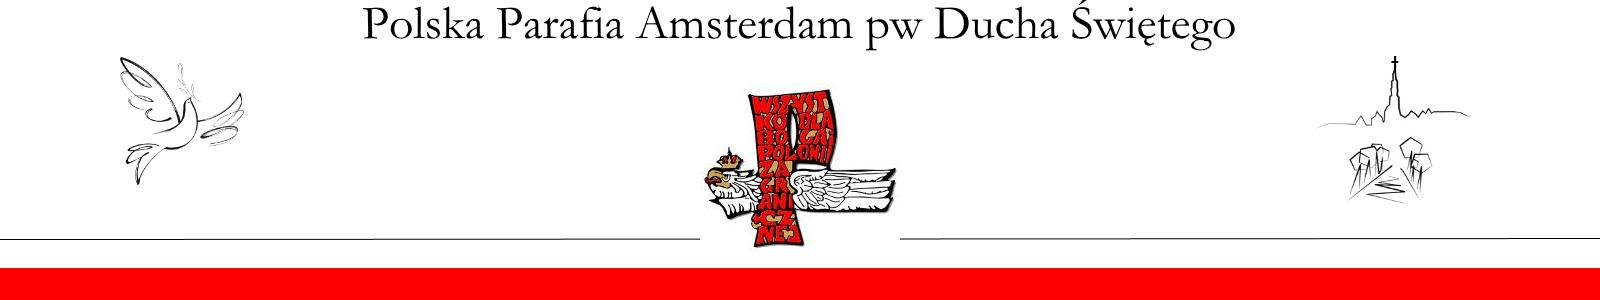 Polska Rzymskokatolicka Parafia Amsterdam